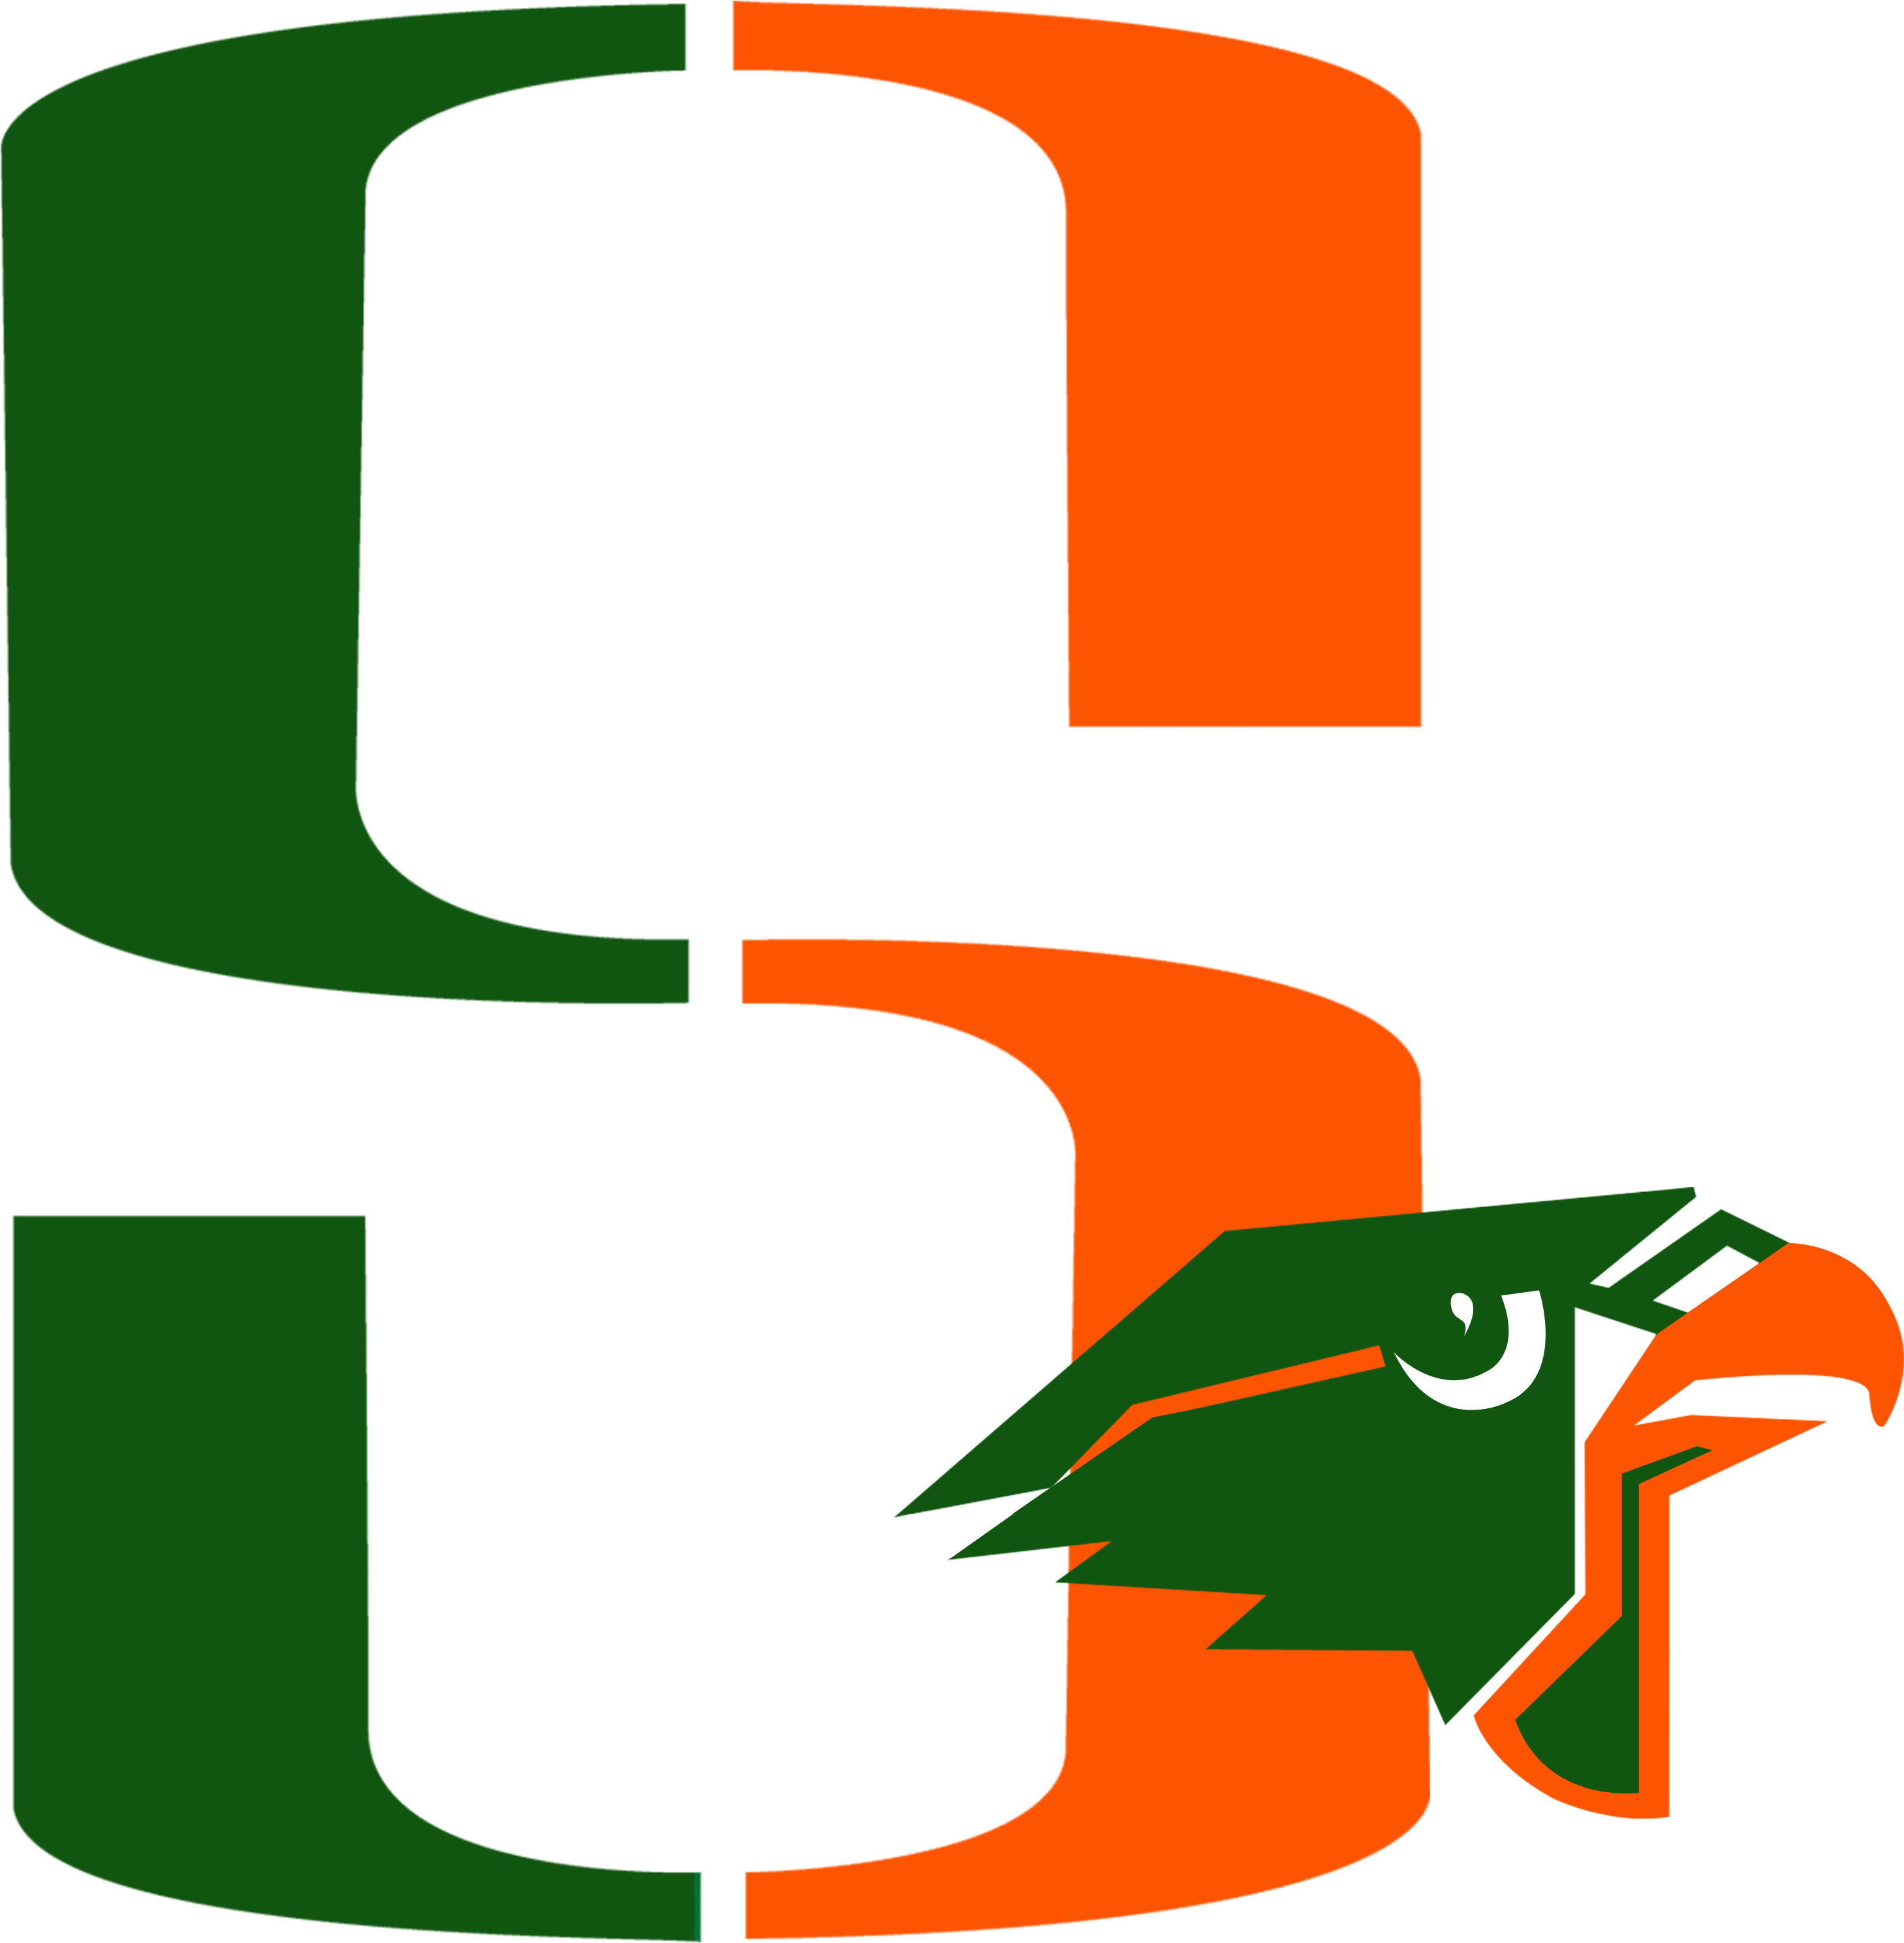 Harlingen South Logo 2 By Paul - Harlingen High School South (3239x3128)